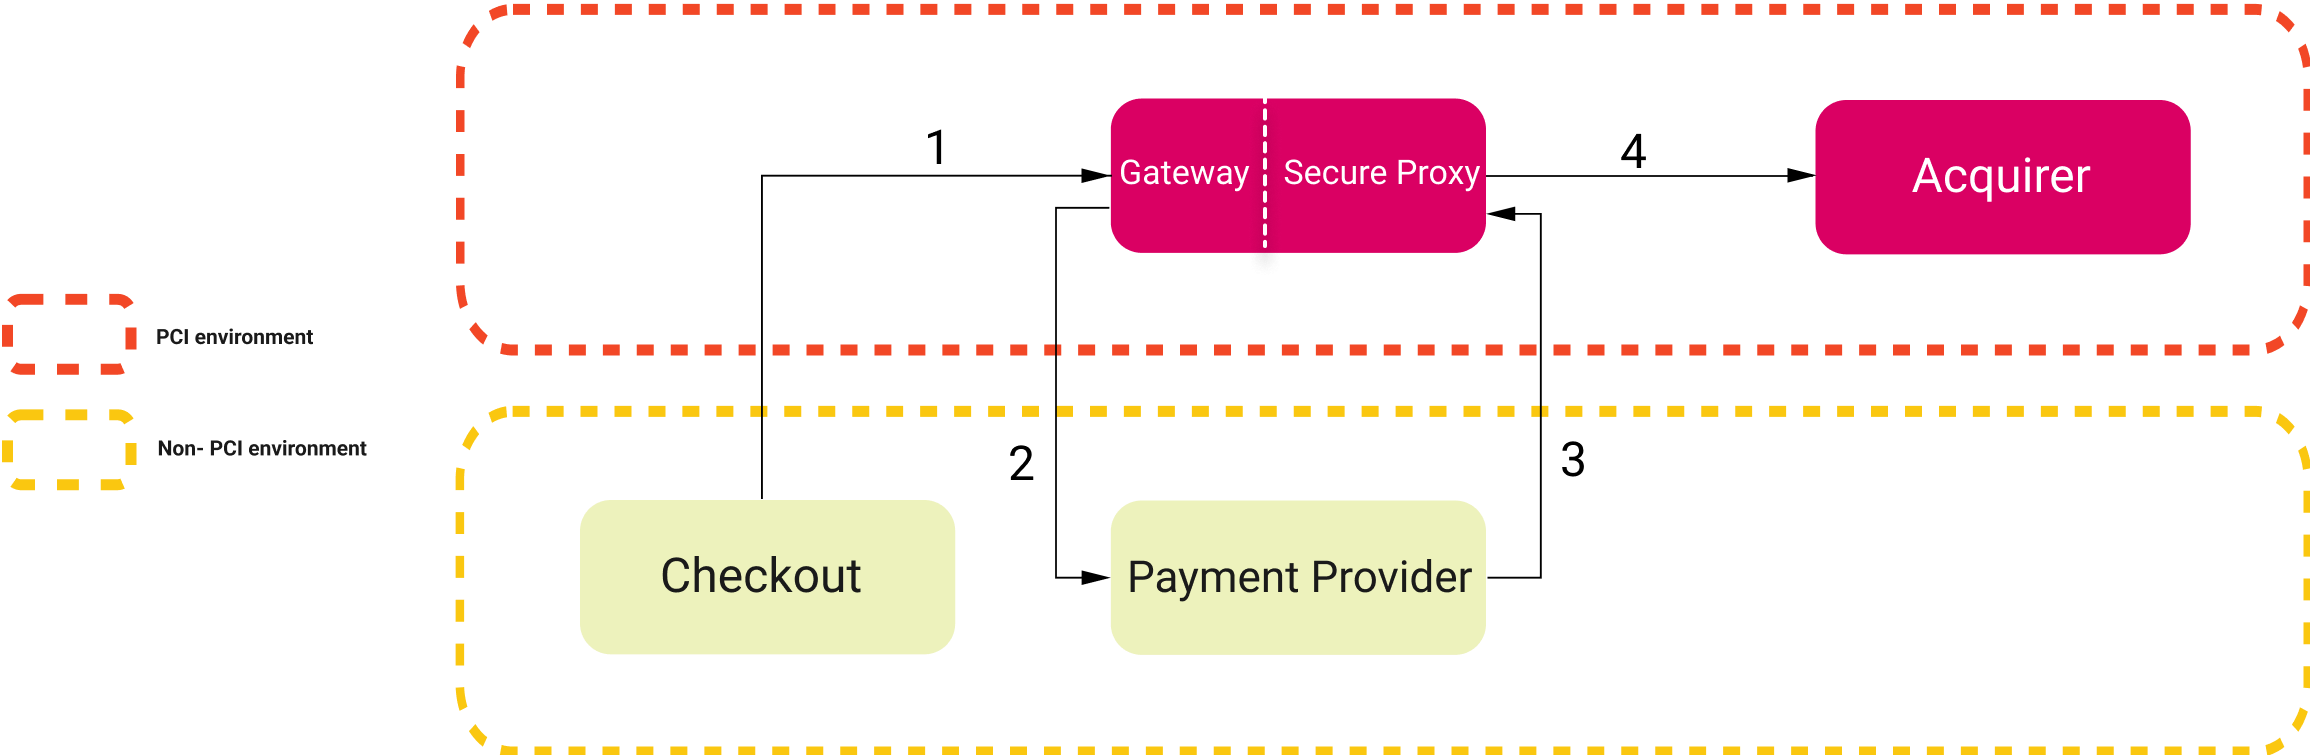 Secure Proxy flow